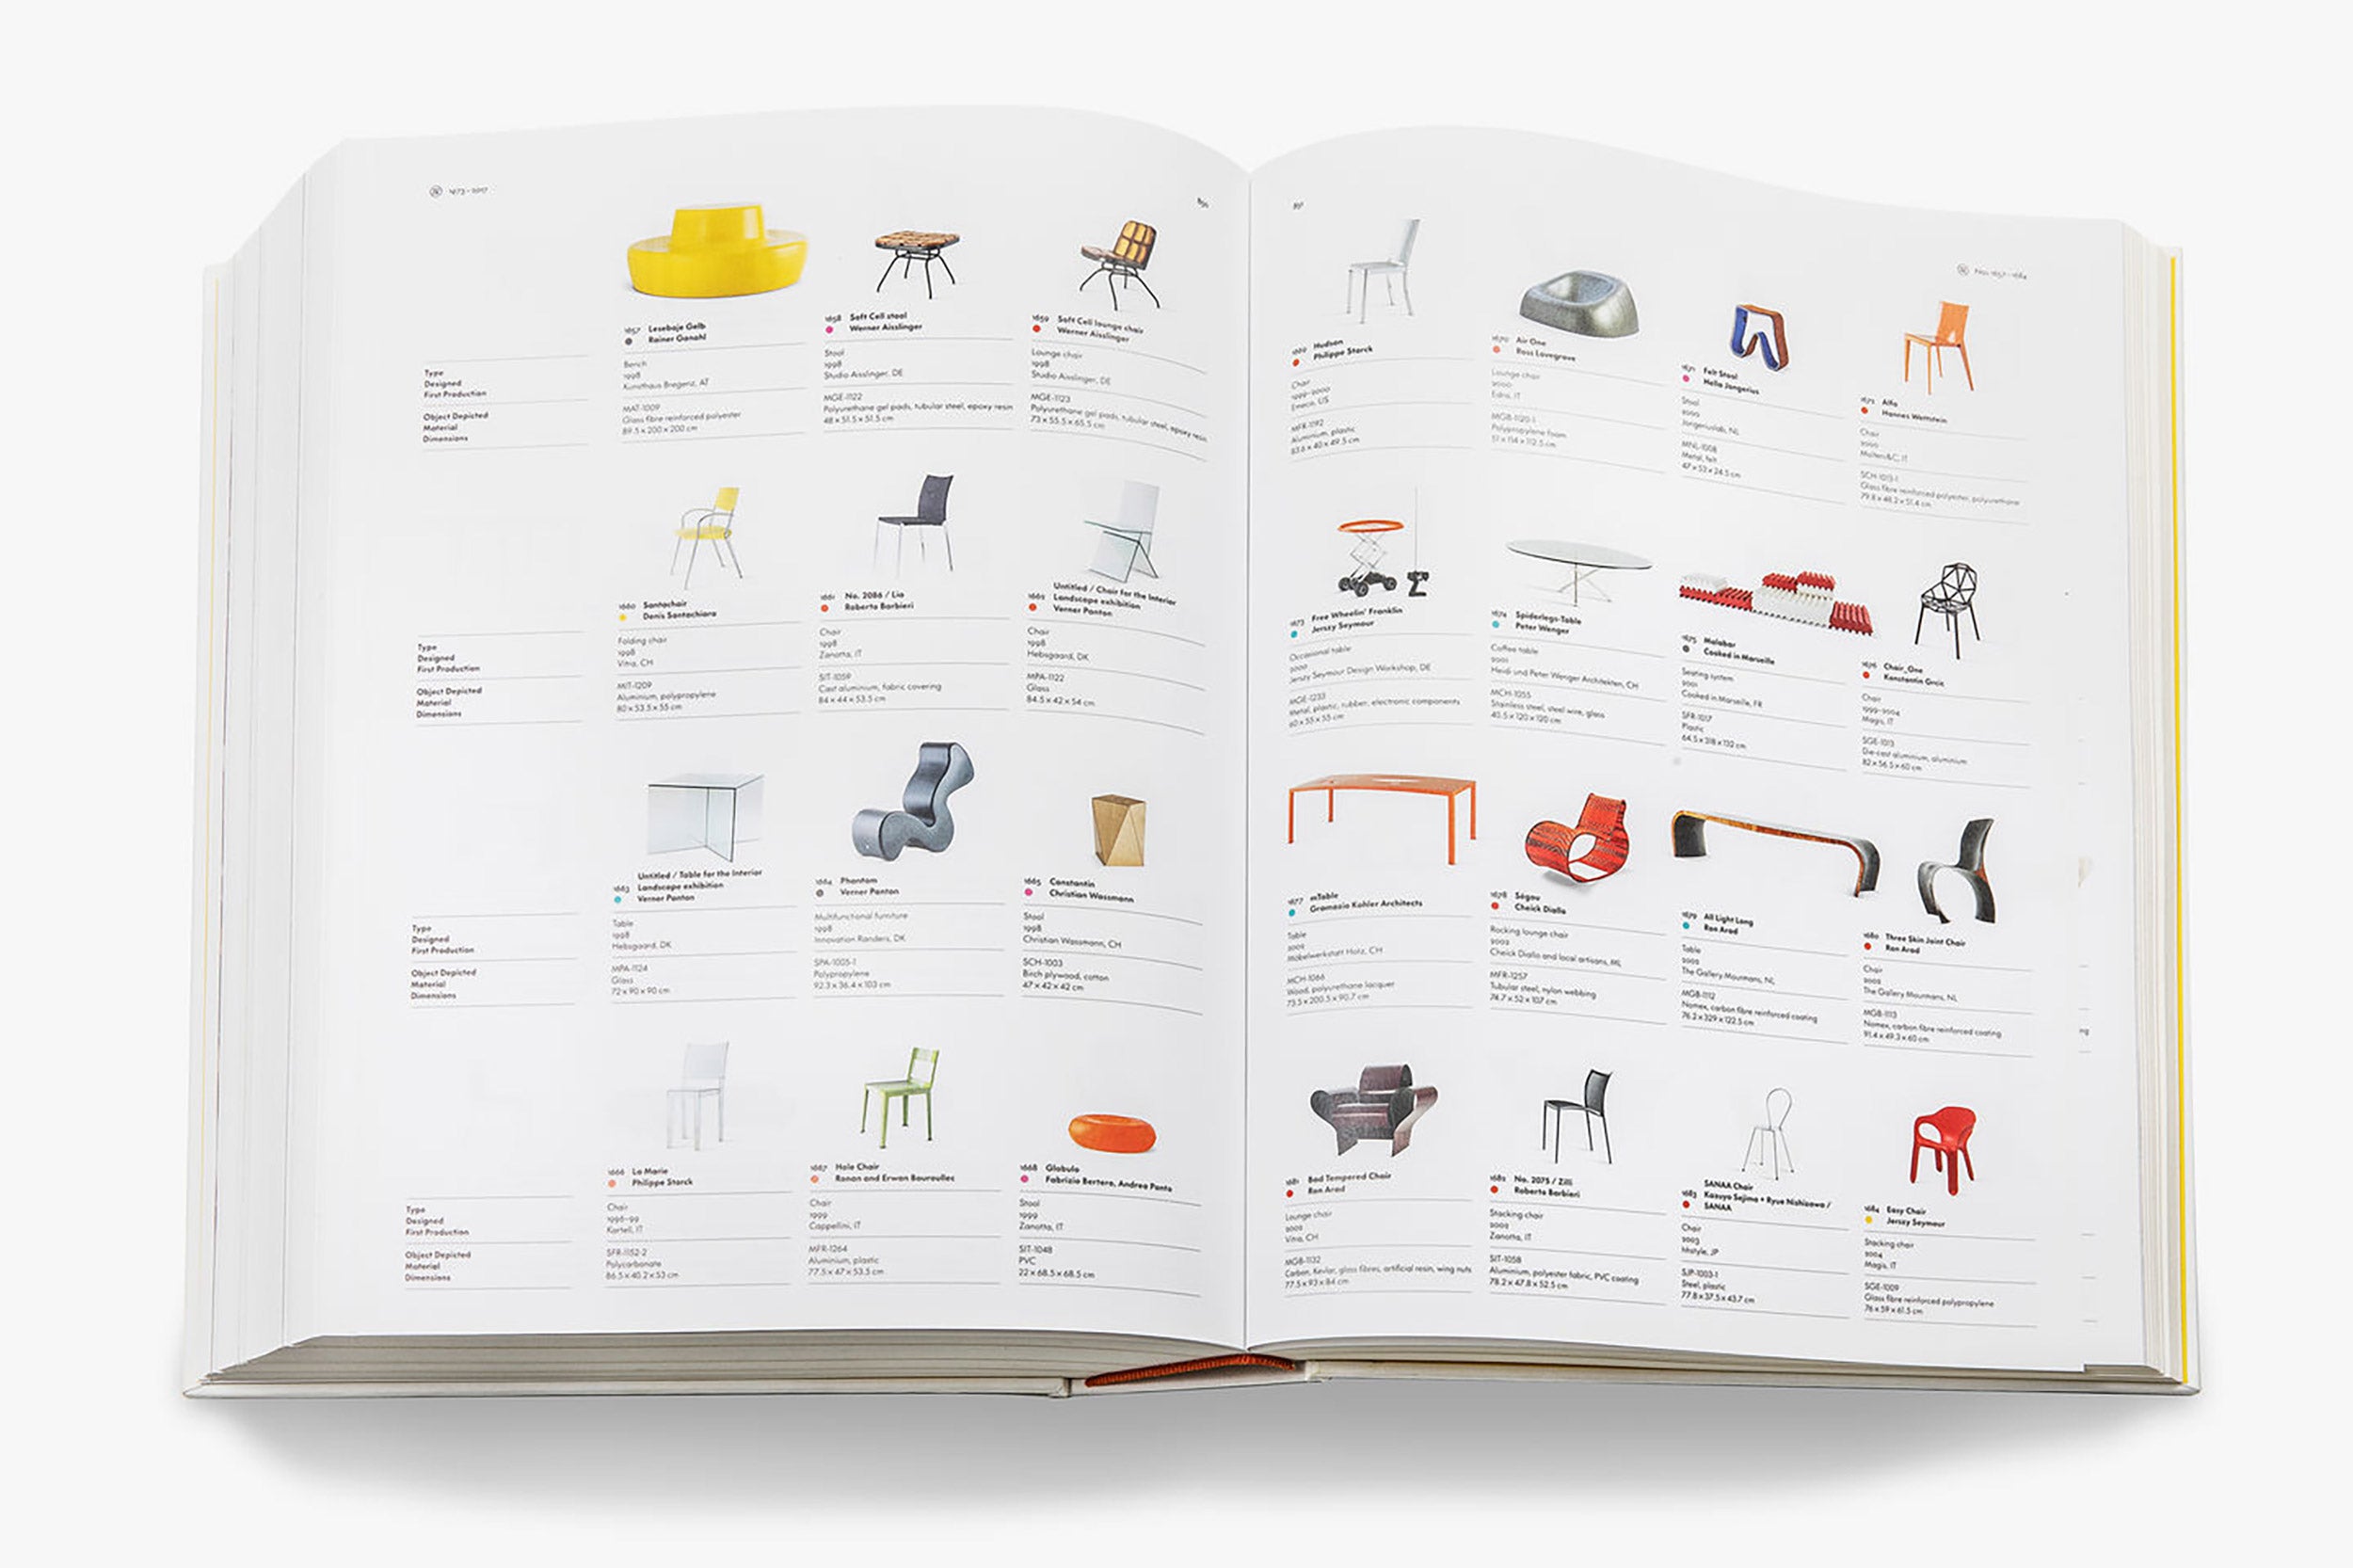 Atlas Of Furniture Design